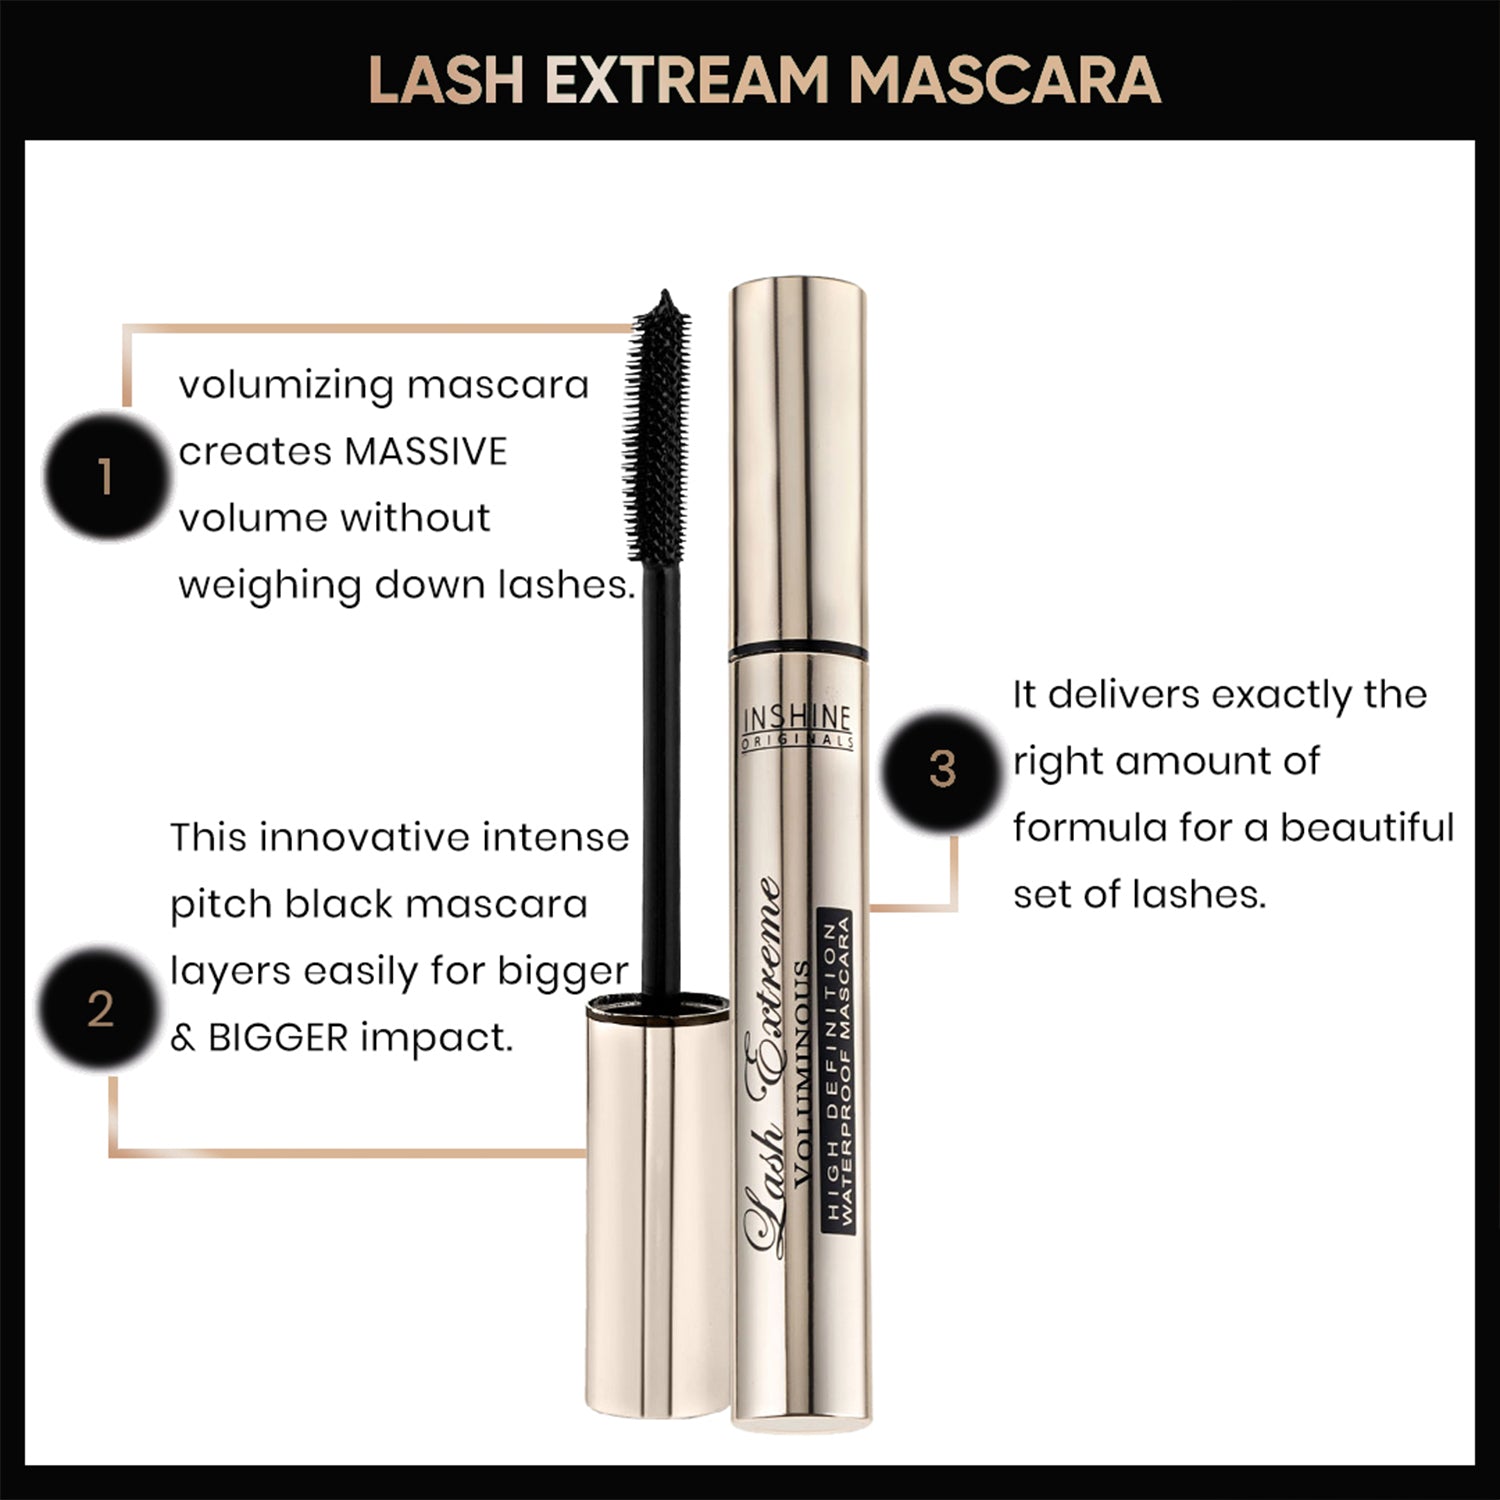 Lash Extreme Mascara